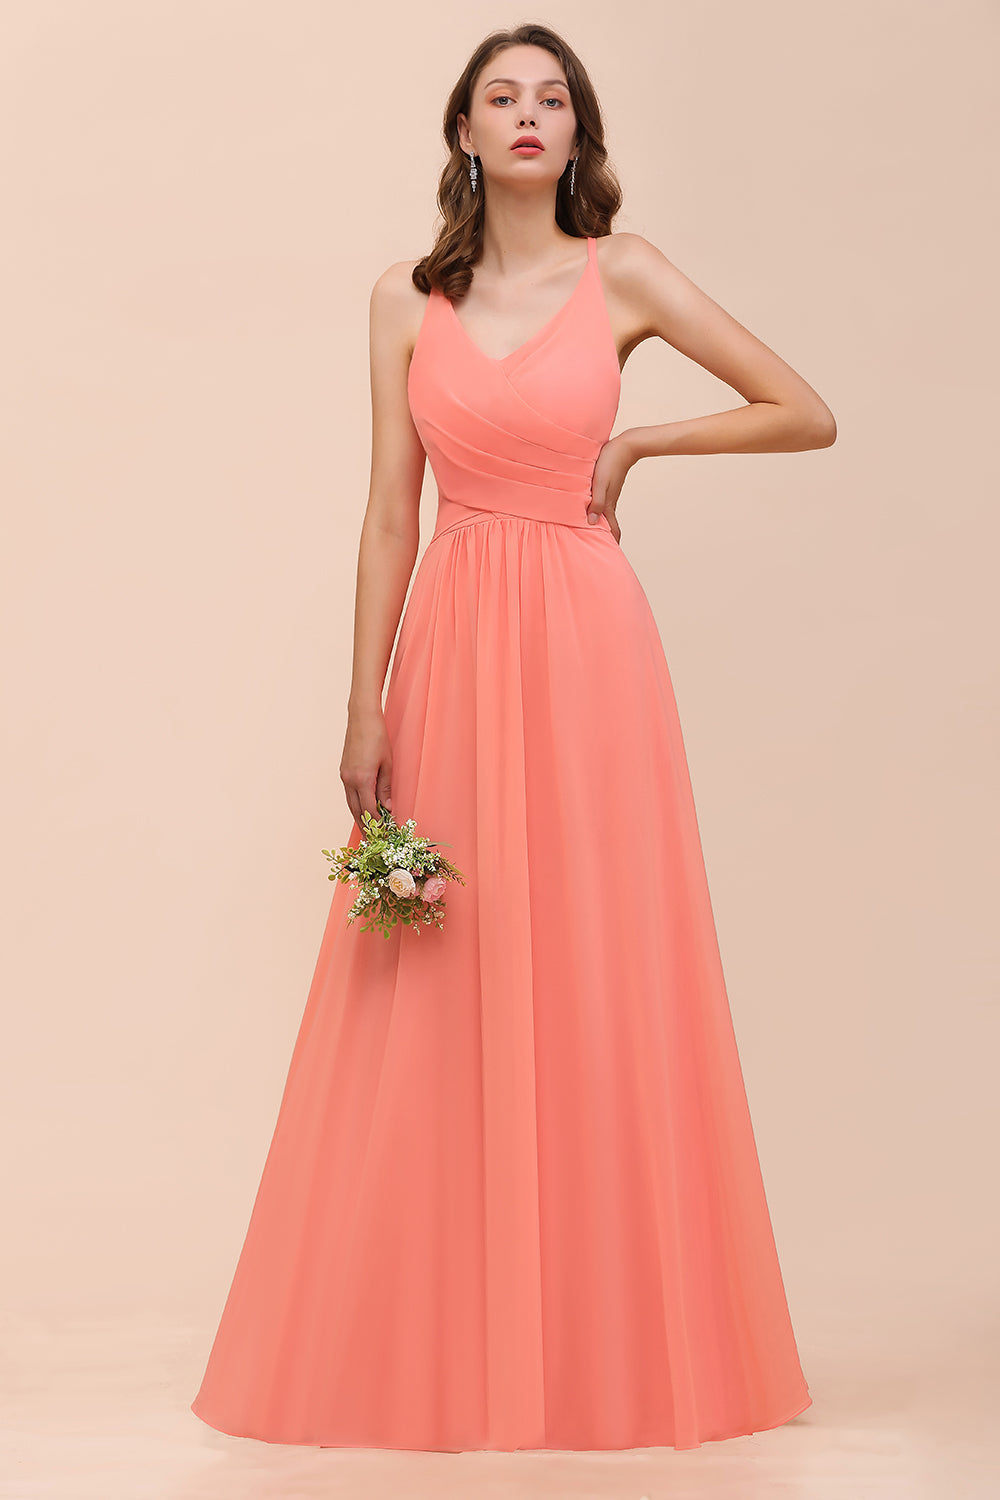 Finden Sie Coral Brautjungfernkleider Lang Günstig online bei babyonlinedress.de. Schlichtes Abendkleid für Sie maßgeschneidert bekommen.